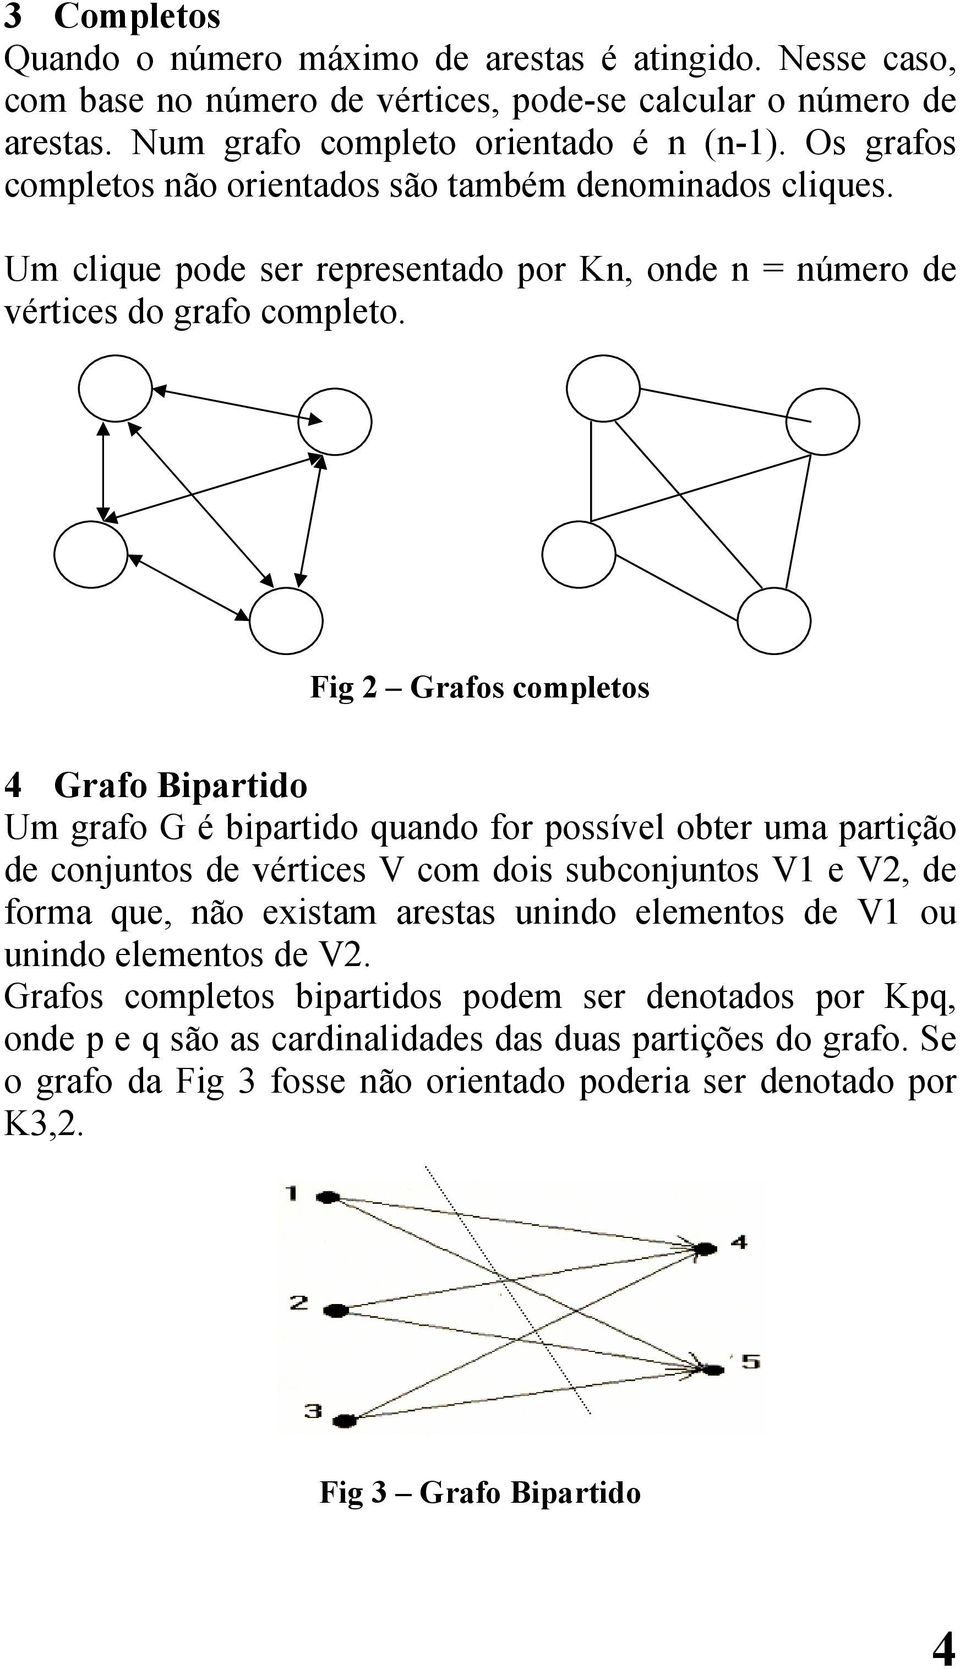 Fig 2 Grafos completos 4 Grafo Bipartido Um grafo G é bipartido quando for possível obter uma partição de conjuntos de vértices V com dois subconjuntos V1 e V2, de forma que, não existam arestas